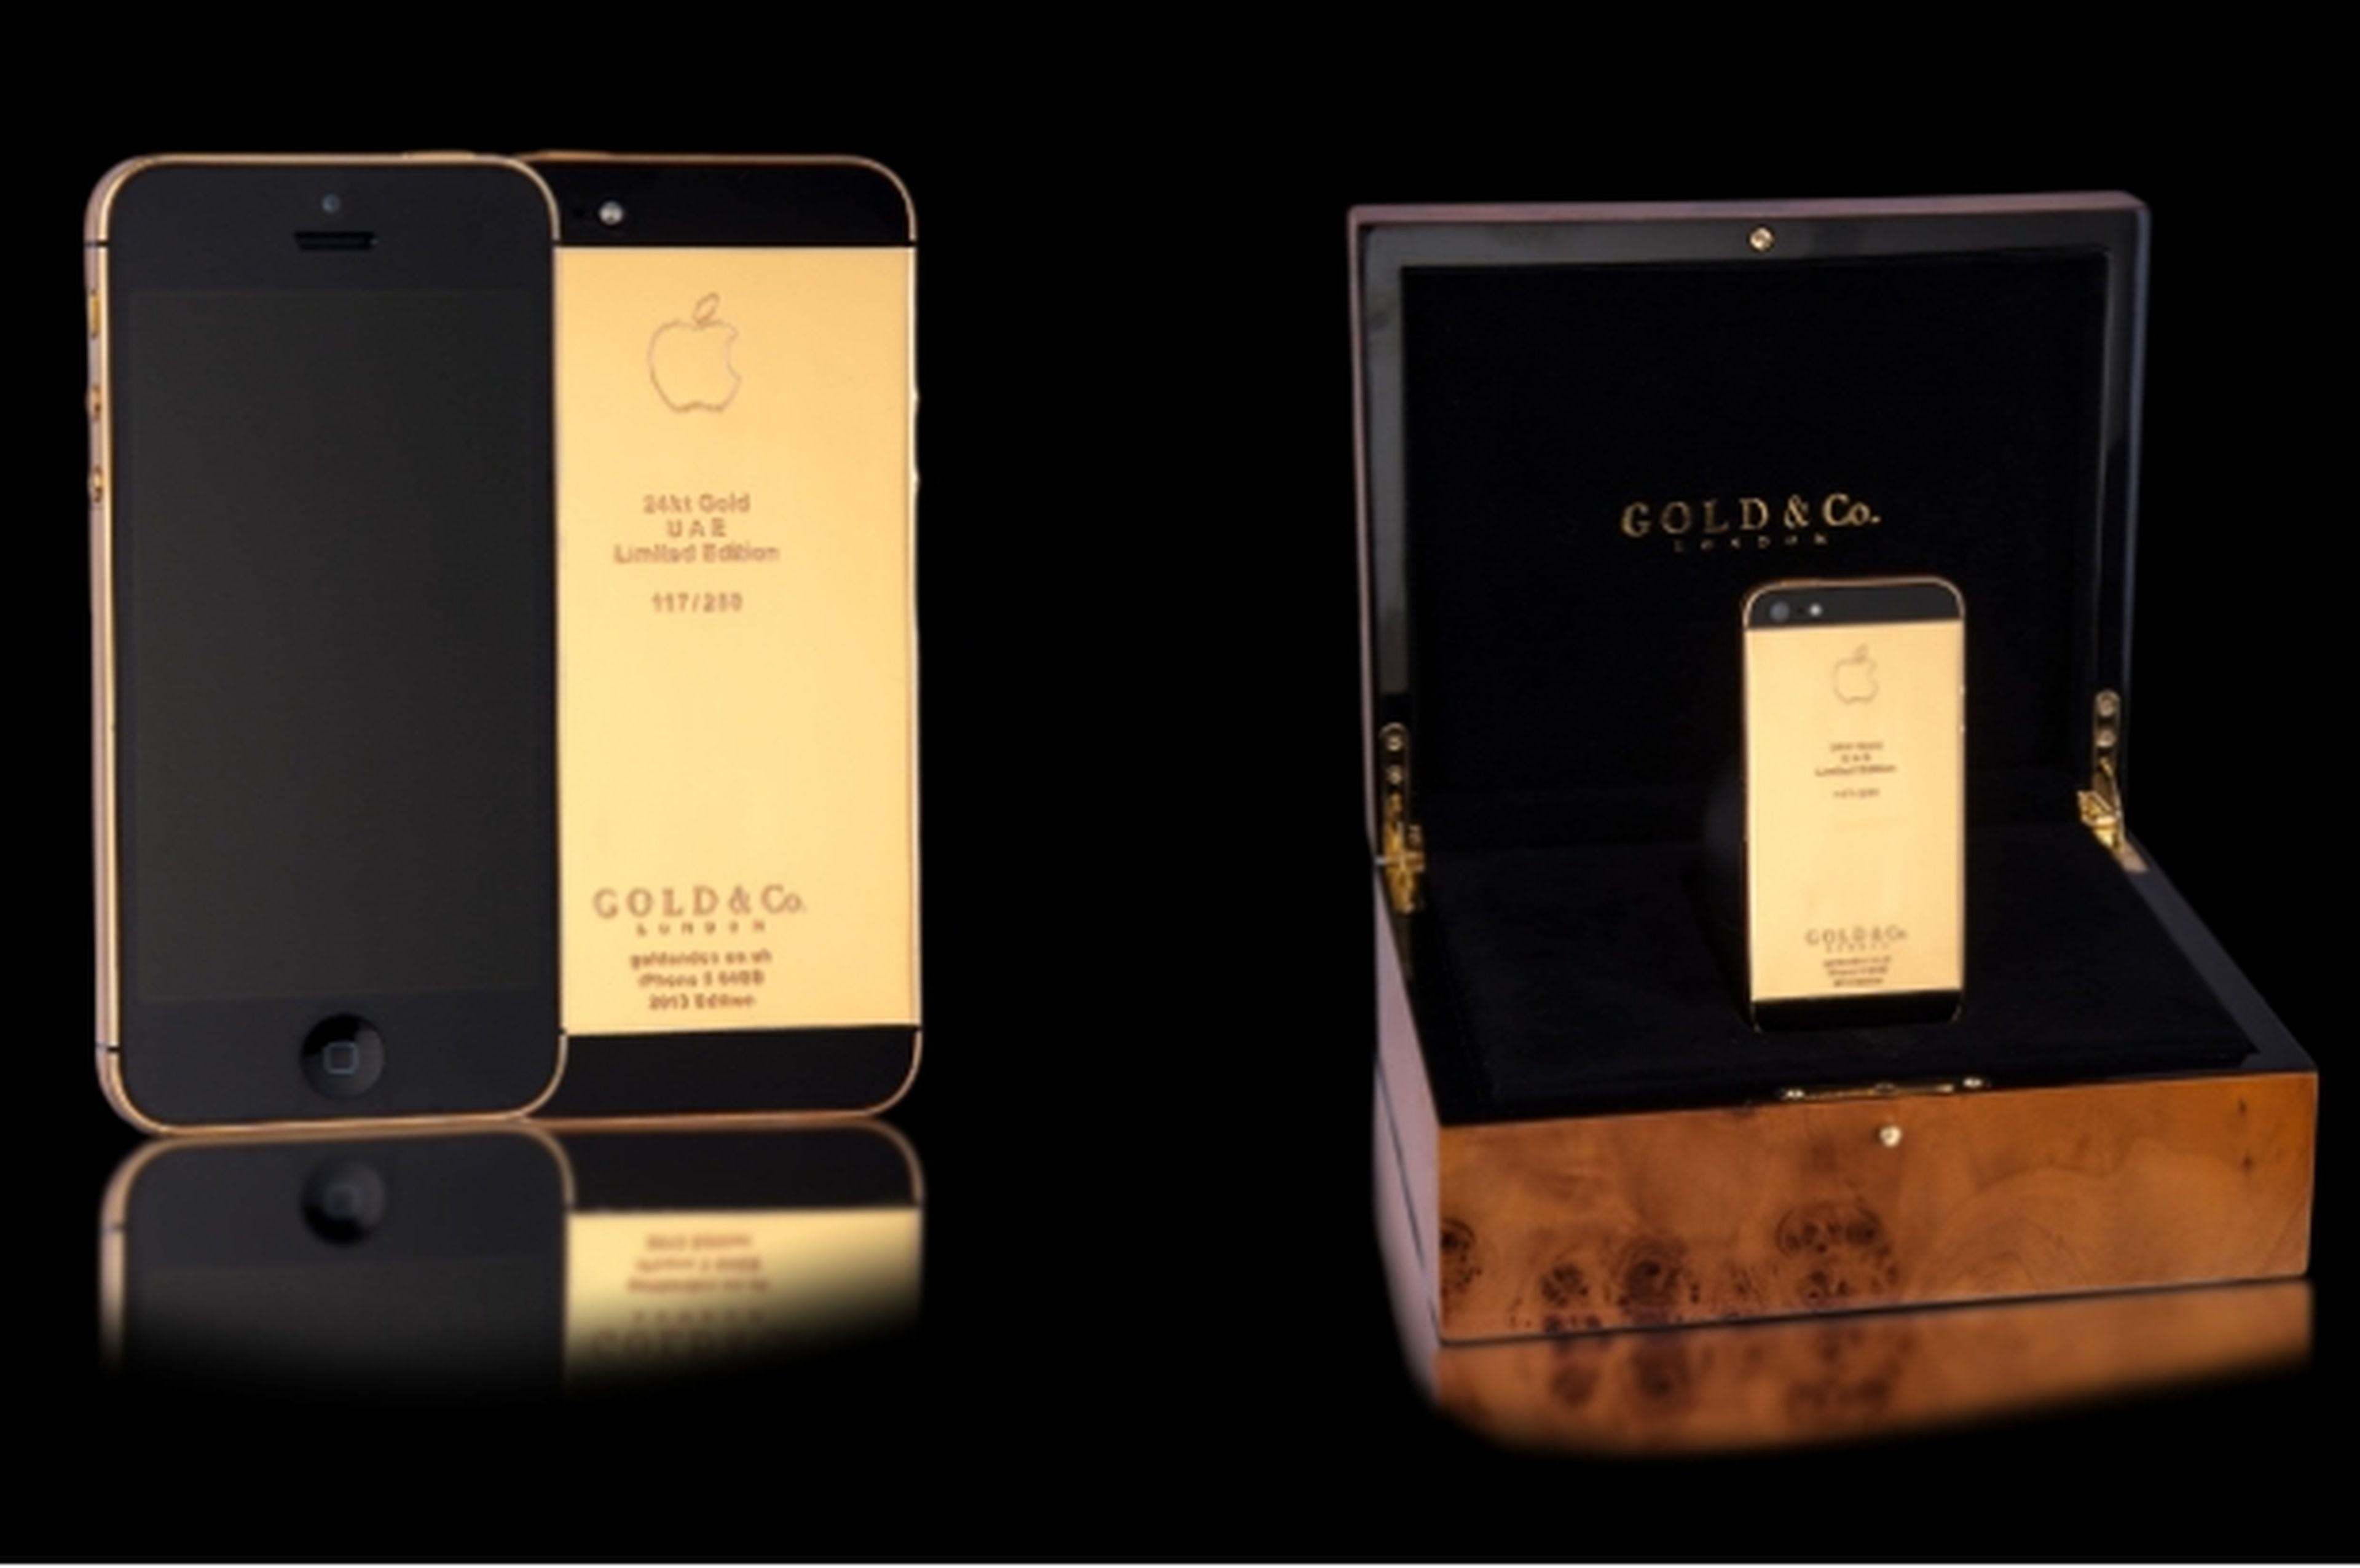 La joyería Gold & Co vende un iPhone 5S bañado en oro de 24 kilates por 5.000 dólares